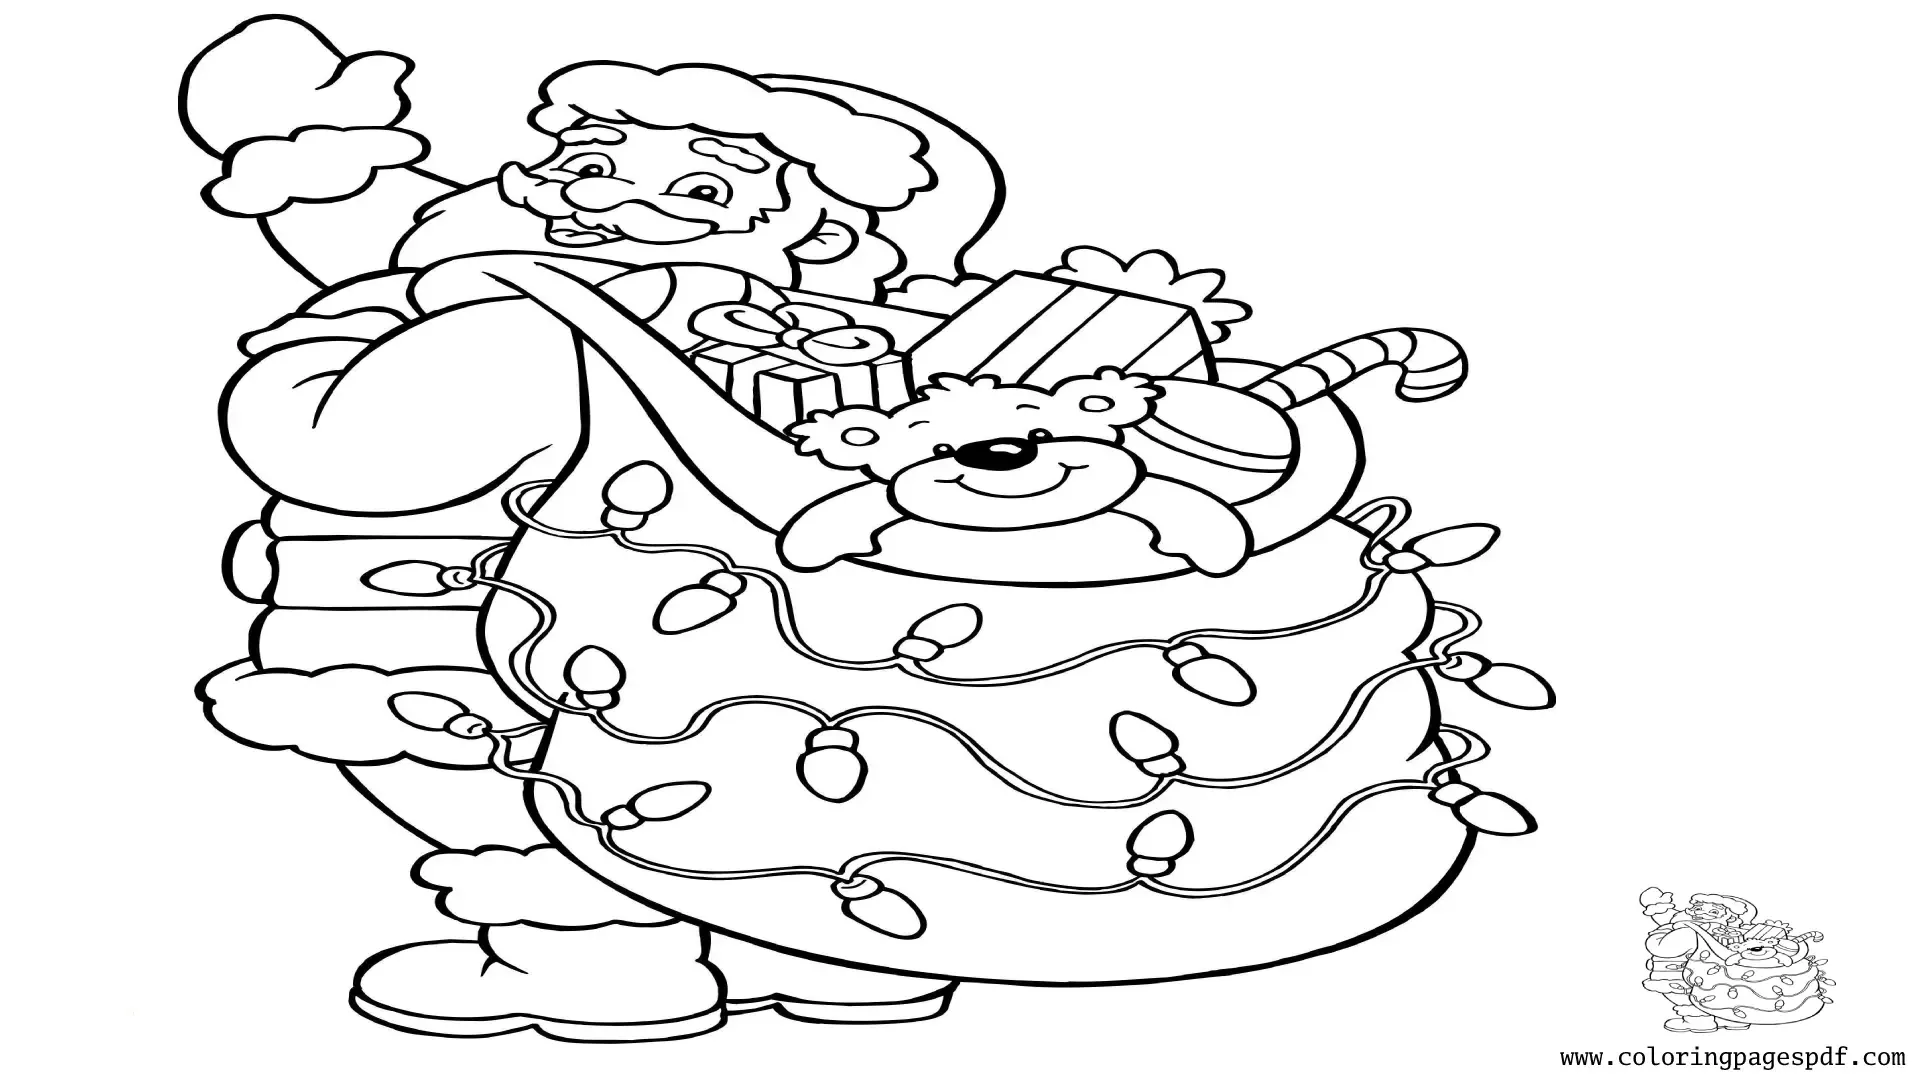 Coloring Page Of Santa Lifting A Gift Bag